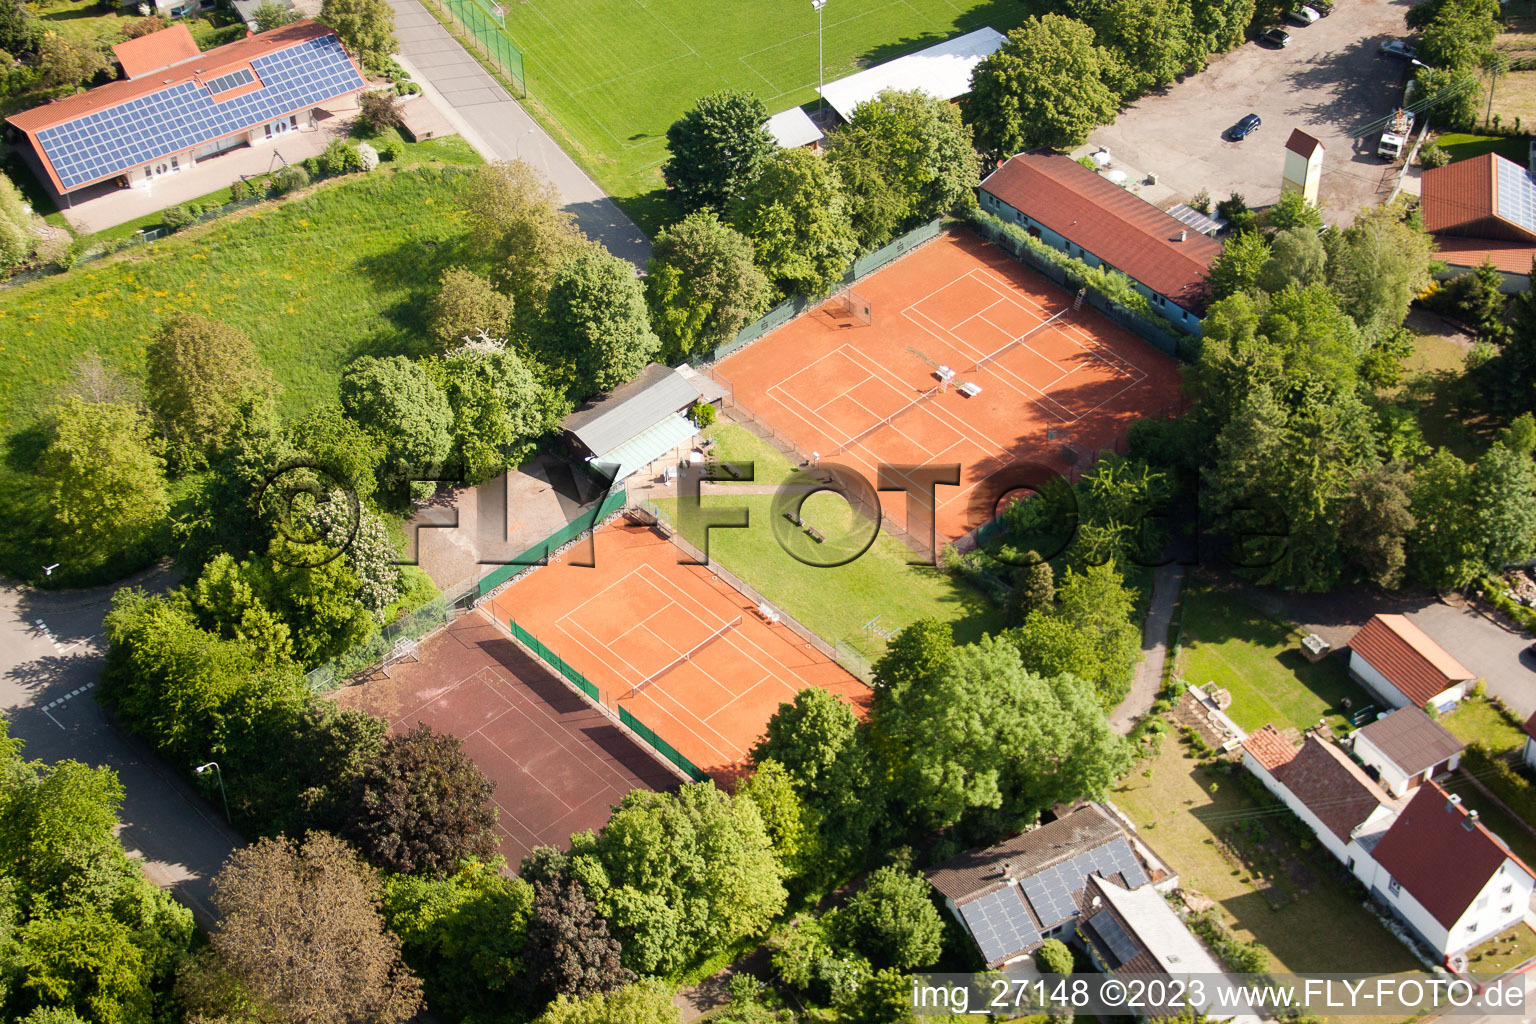 District Mörzheim in Landau in der Pfalz in the state Rhineland-Palatinate, Germany seen from a drone